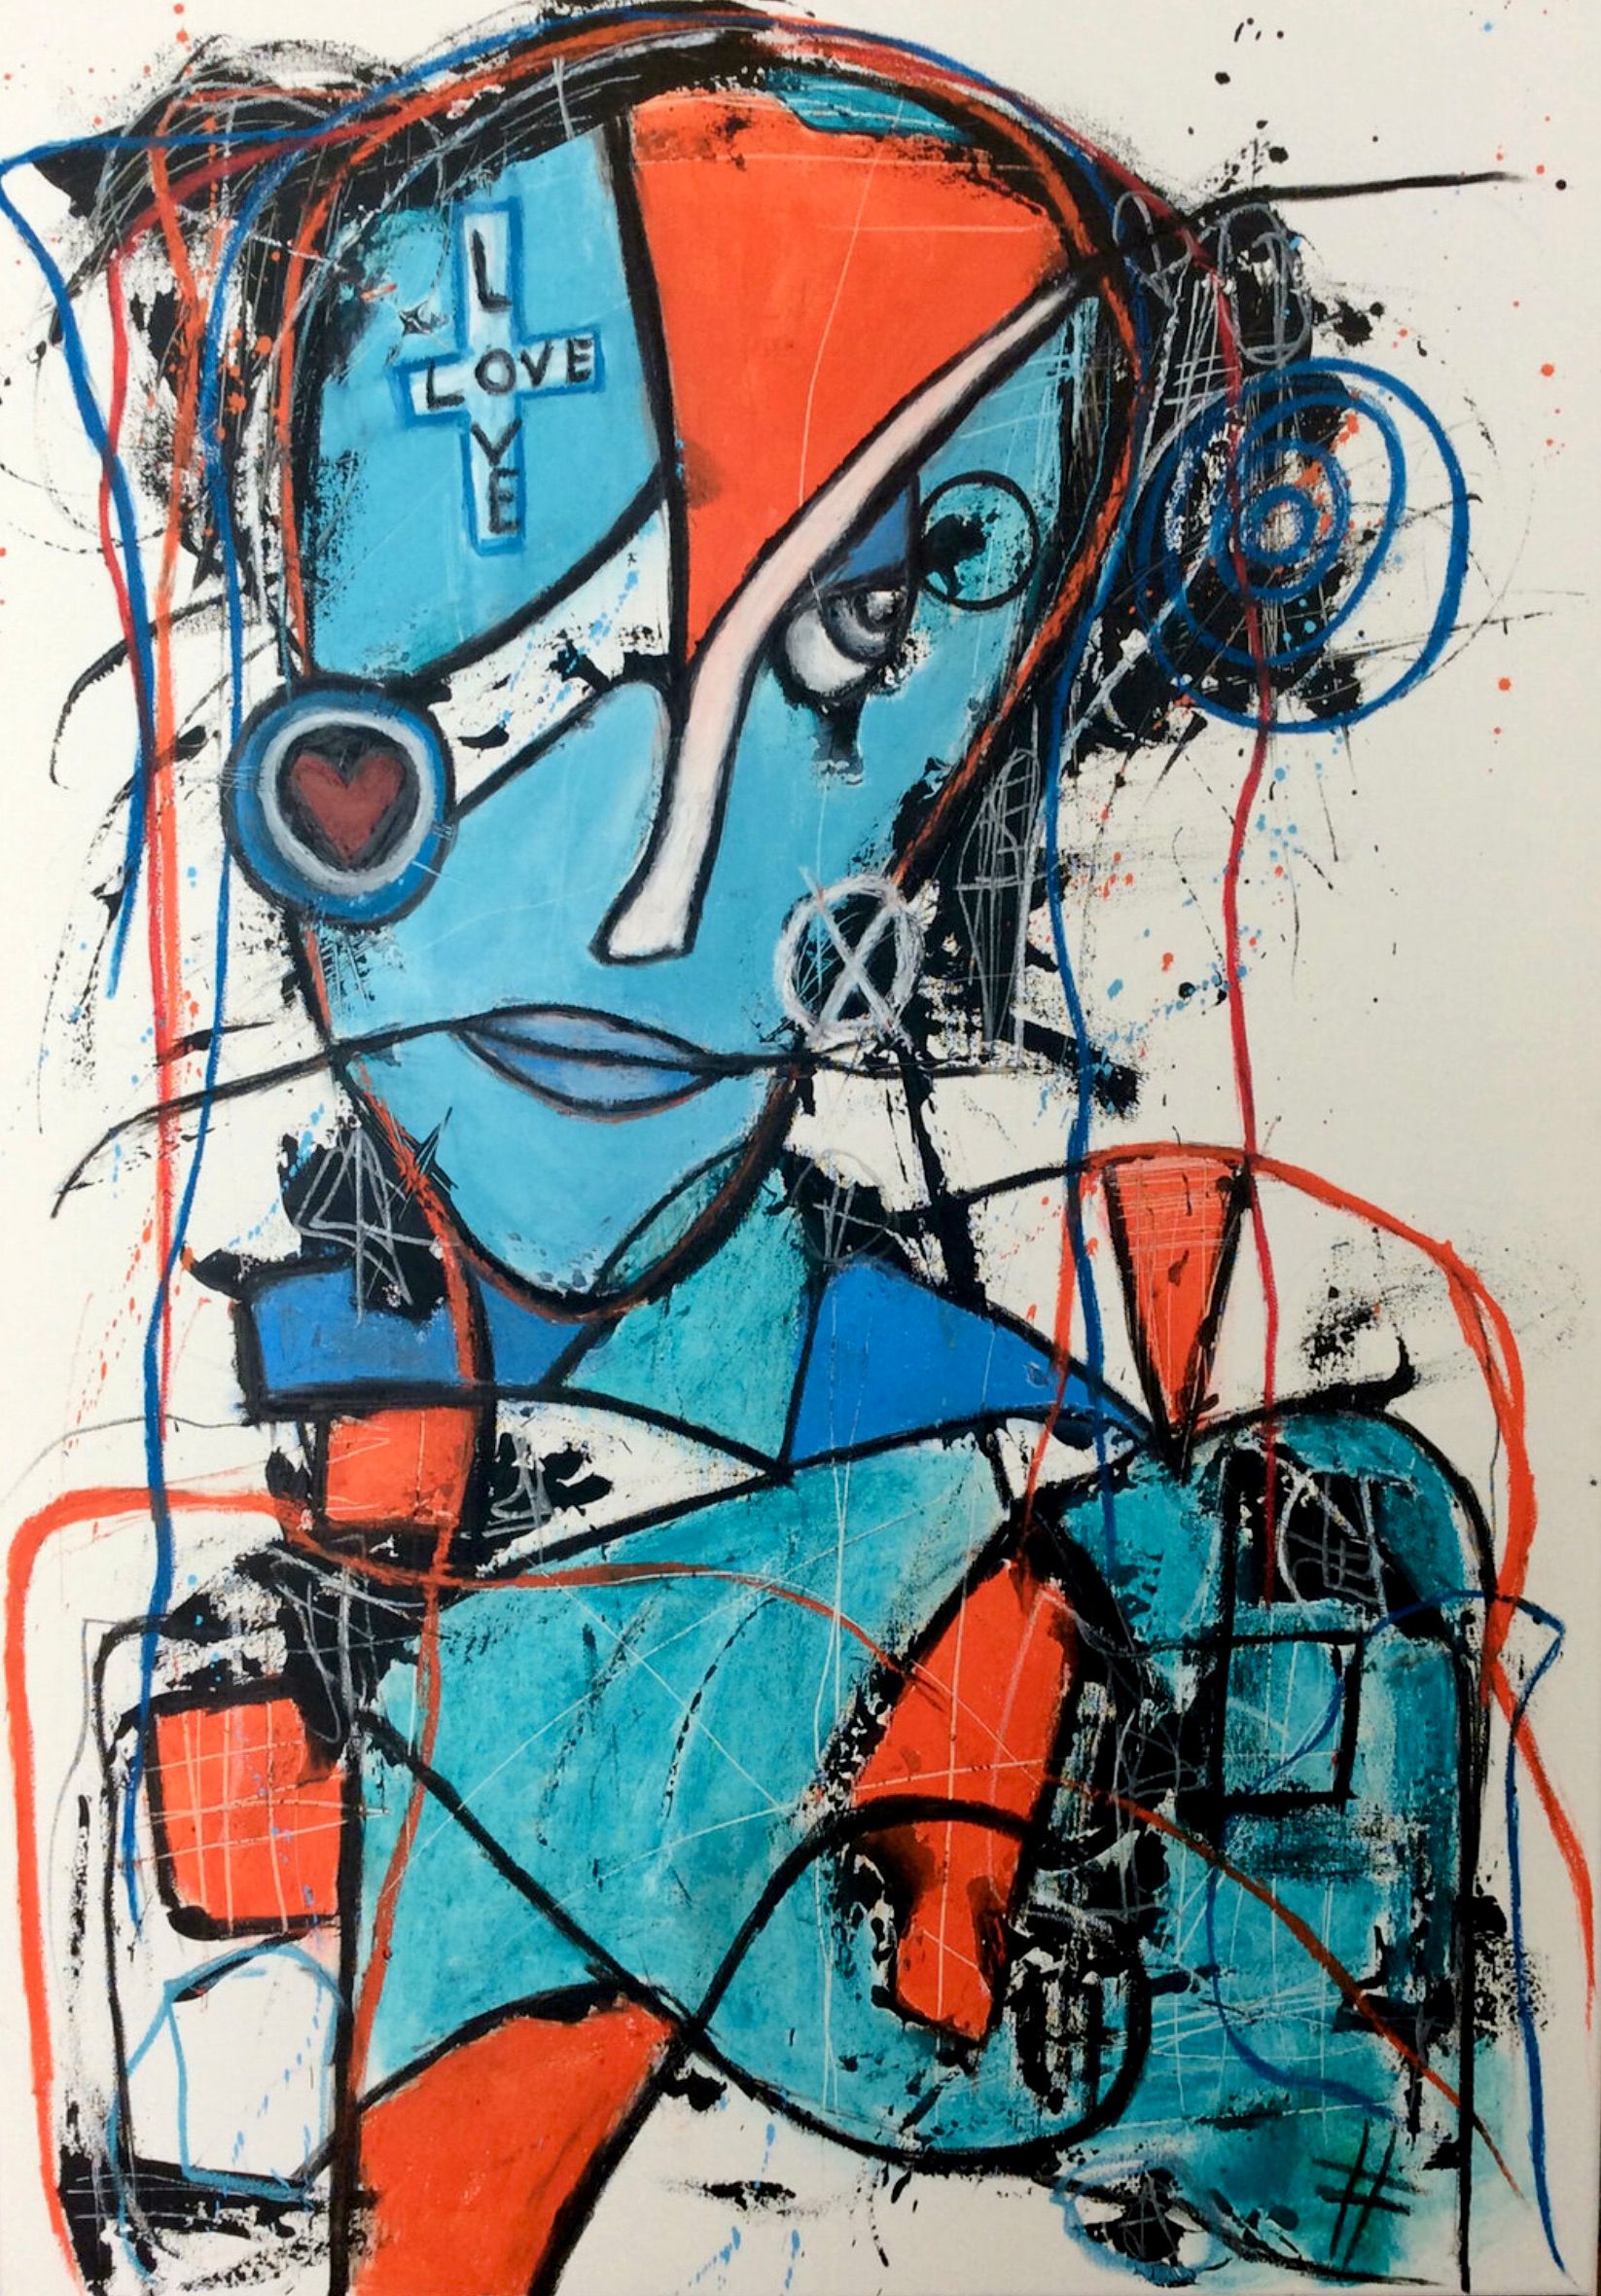 El expresivo retrato semiabstracto "En busca del amor", de Ilona Schmidt, muestra el rostro de una mujer. Los colores rojo, naranja, turquesa y azul dominan este cuadro.